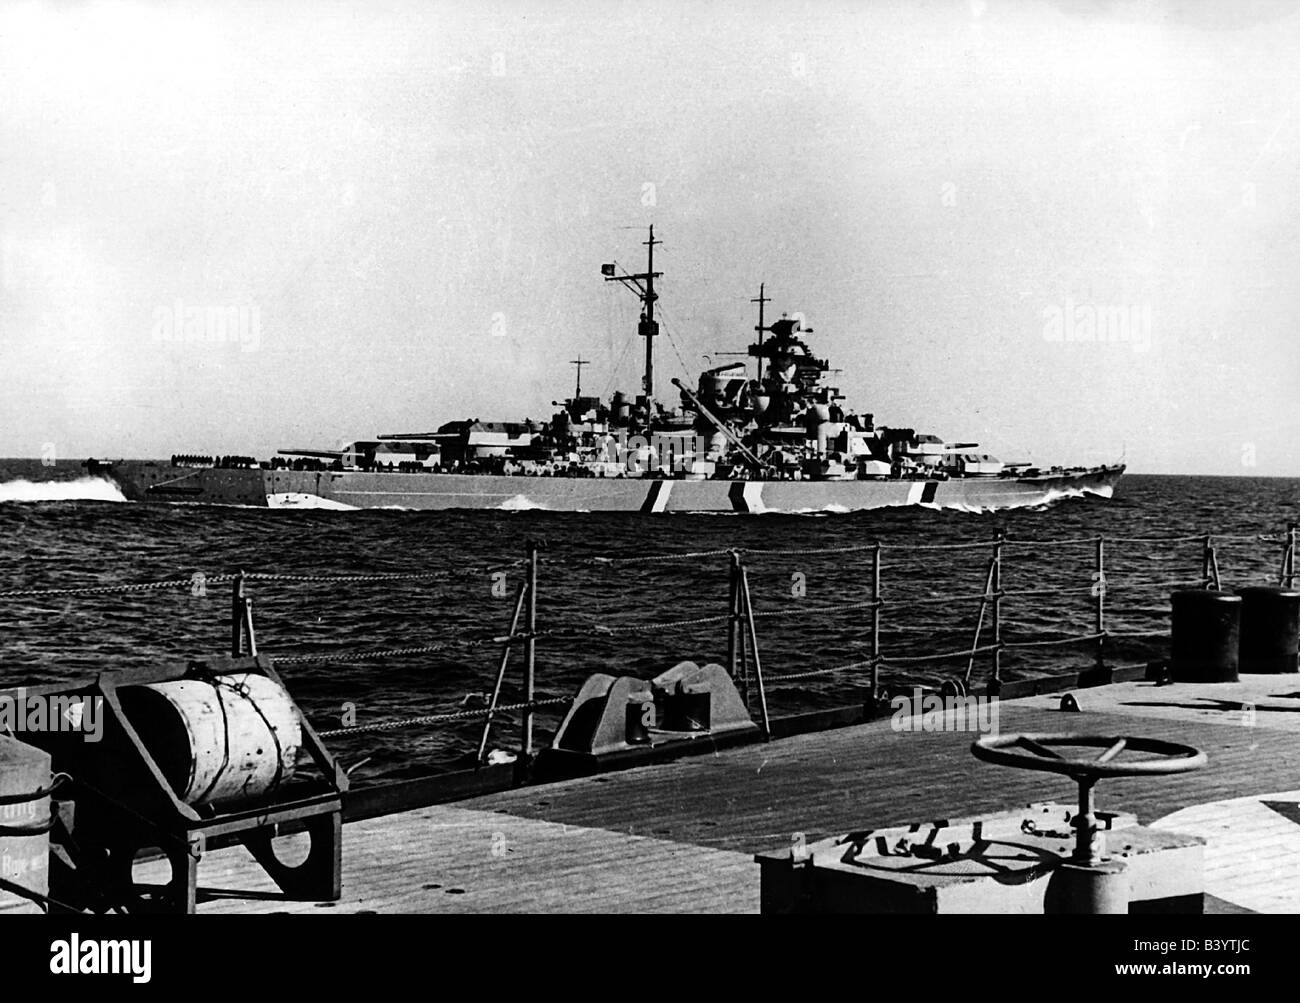 Eventi, Seconda guerra mondiale / seconda guerra mondiale, guerra navale, nave da guerra tedesca 'Bismarck' visto dall'incrociatore pesante 'Prinz Eugen', 19./20.5.1941, Foto Stock